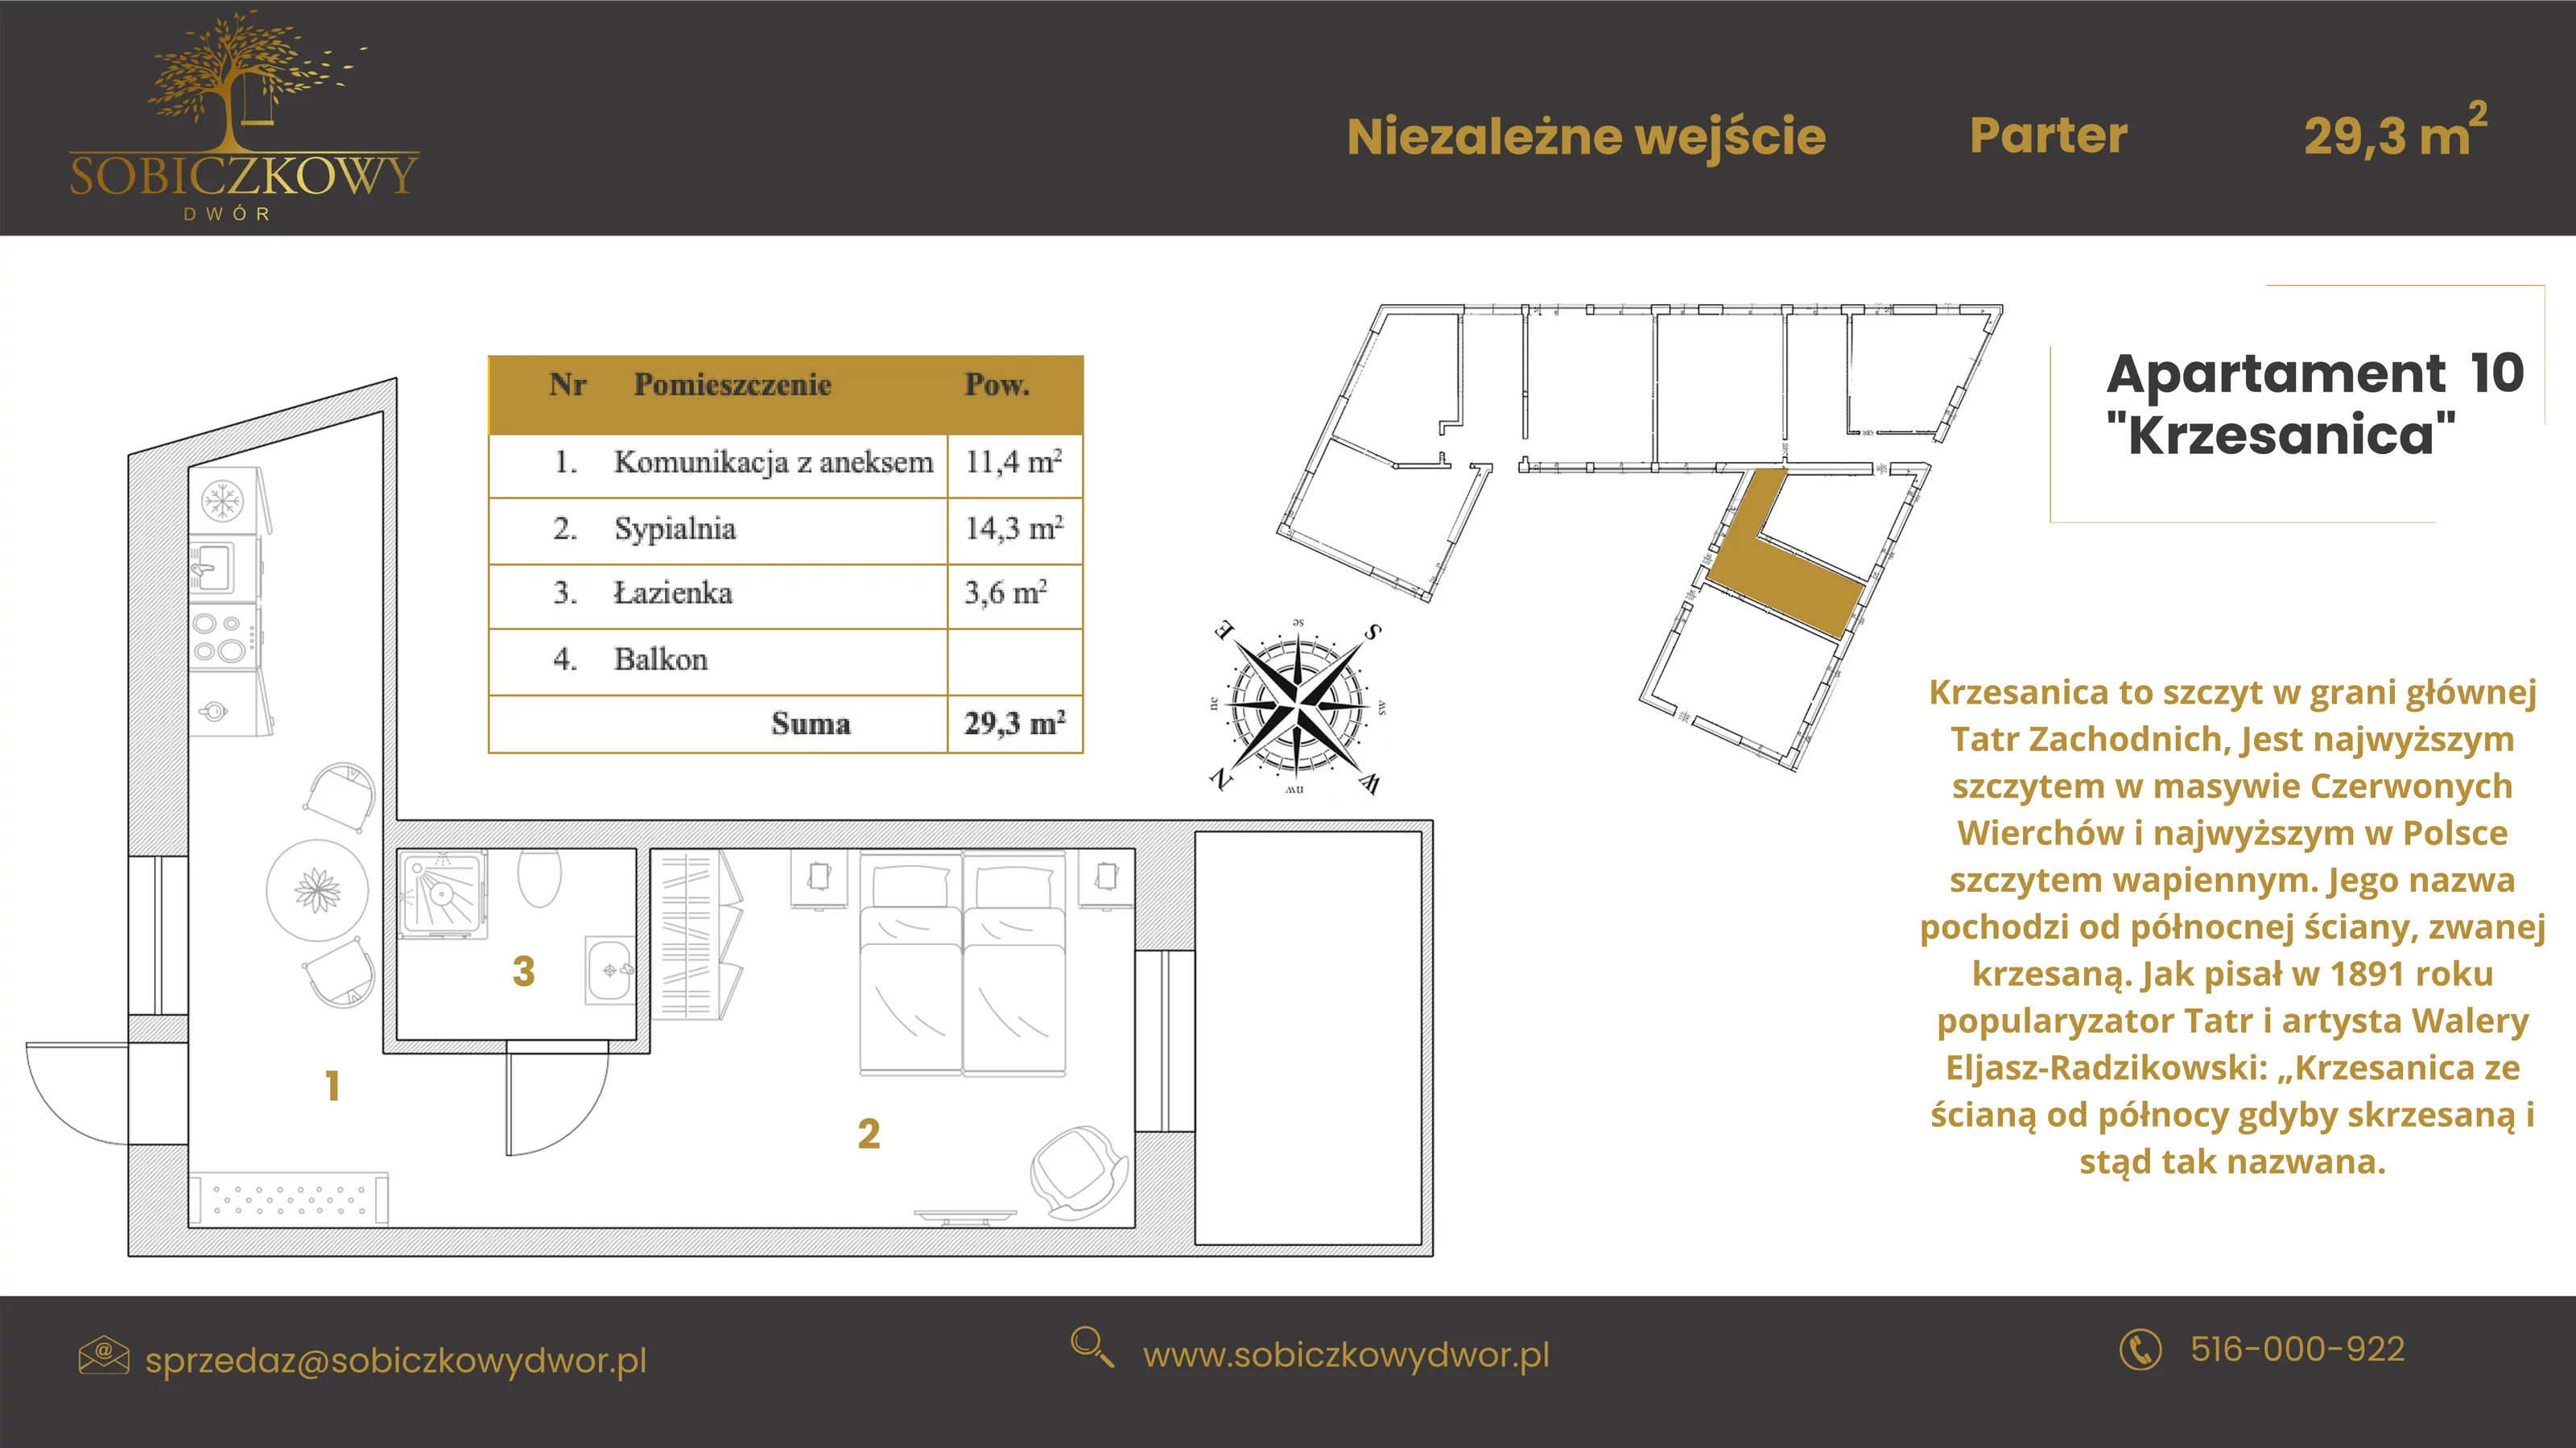 Apartament 32,60 m², parter, oferta nr 10 "Krzesanica", Sobiczkowy Dwór, Kościelisko, ul. Sobiczkowa Bór 1